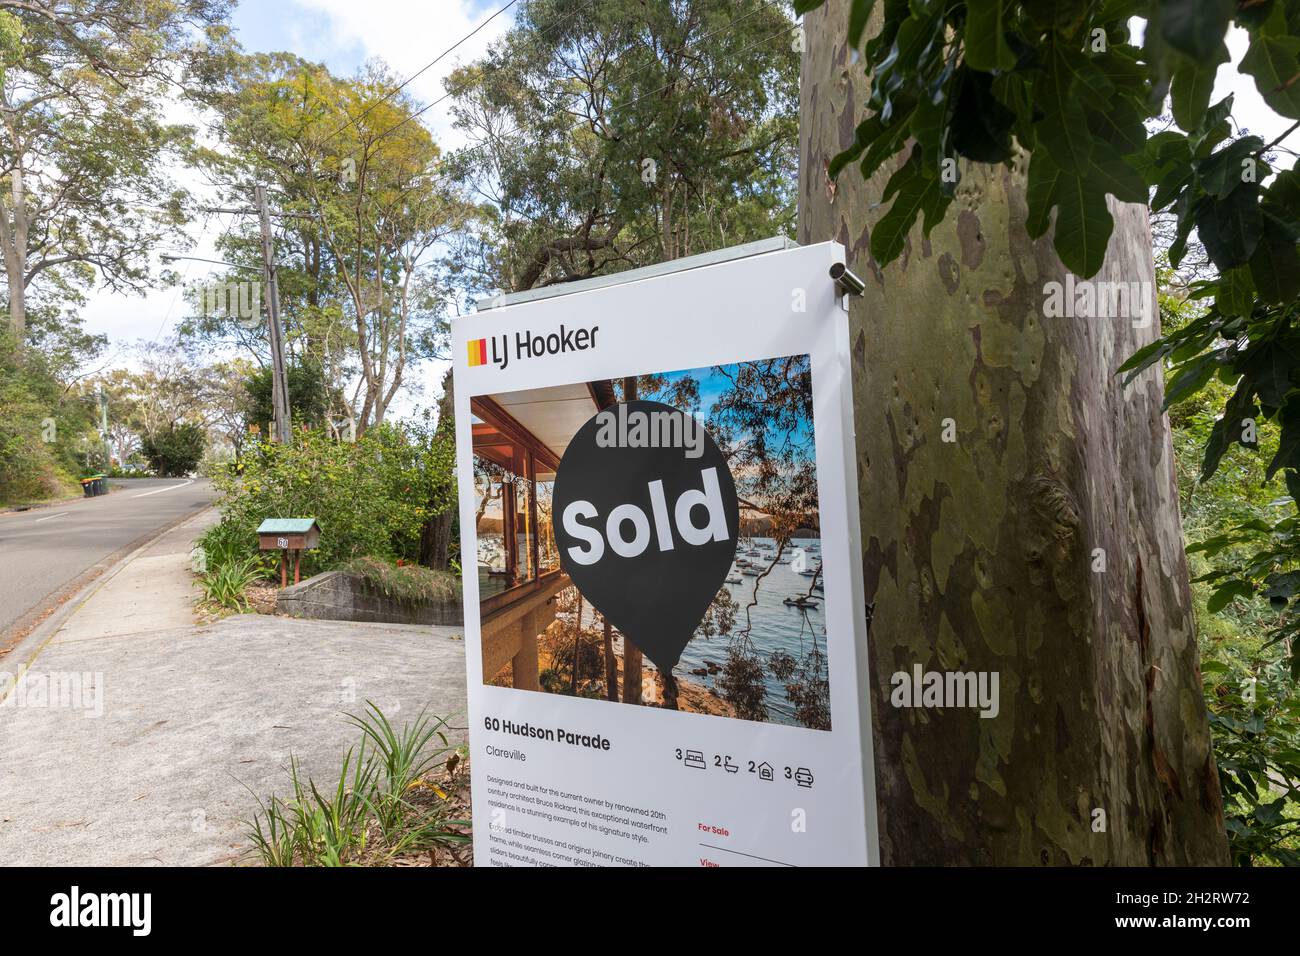 Clareville in Sydney, LJ Hooker agente immobiliare ha venduto una proprietà sul lungomare in un mercato riscaldato di proprietà di Sydney, NSW, Australia Foto Stock